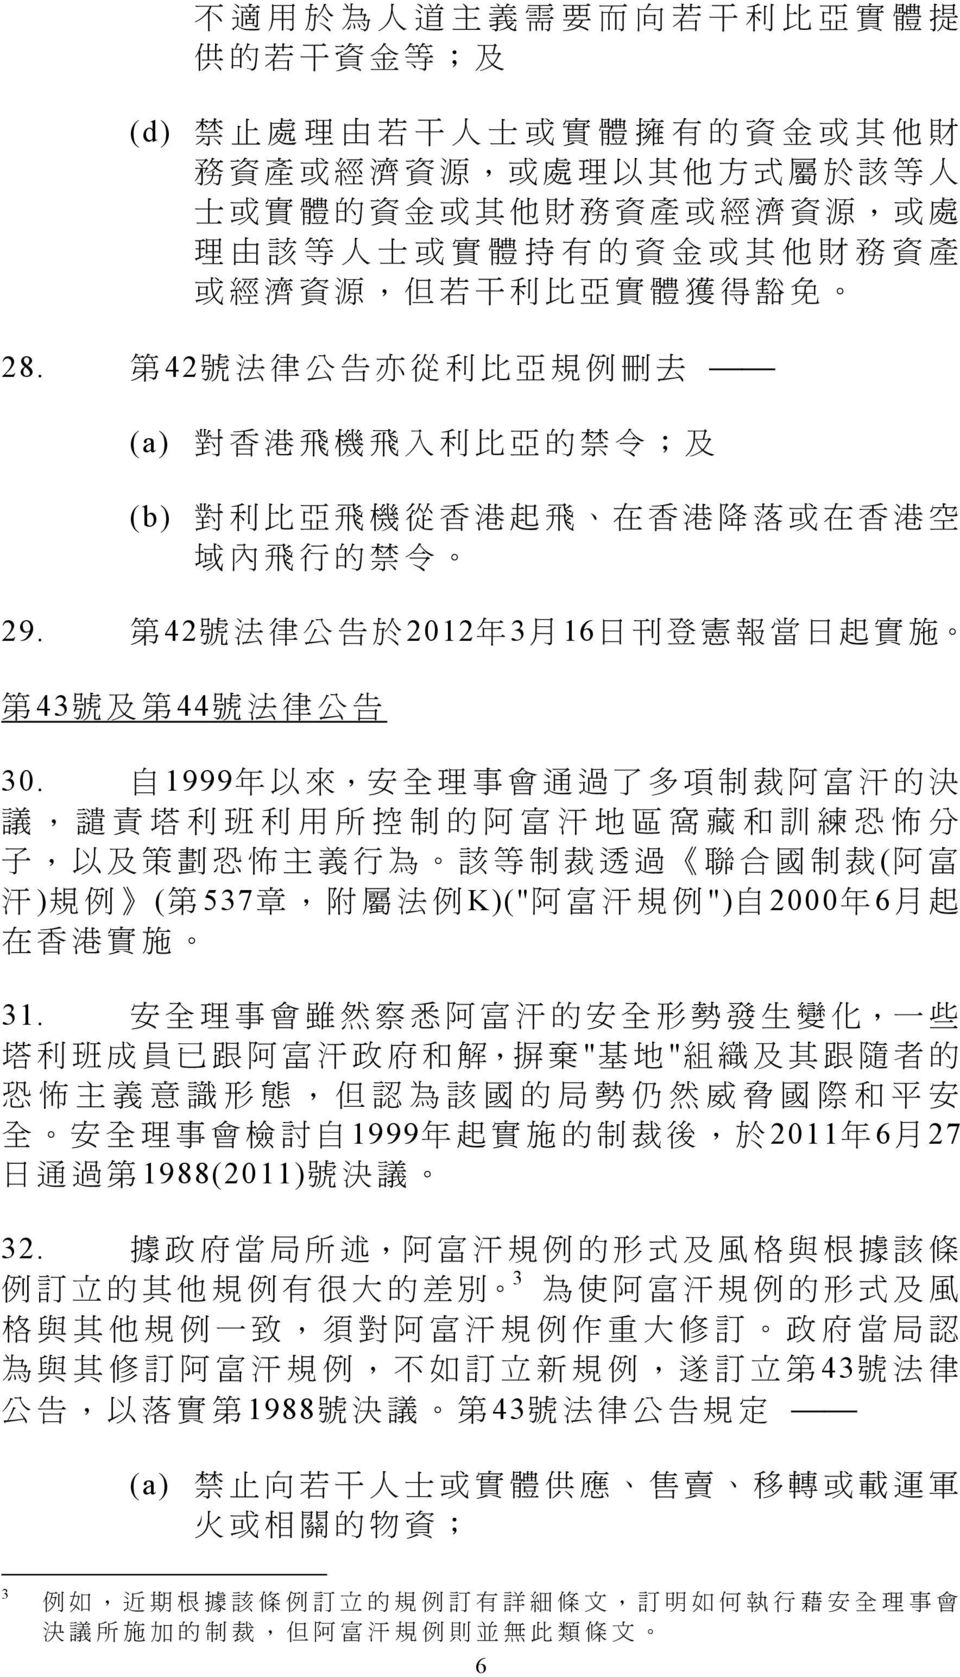 第 42 號 法 律 公 告 亦 從 利 比 亞 規 例 刪 去 (a) 對 香 港 飛 機 飛 入 利 比 亞 的 禁 令 ; 及 (b) 對 利 比 亞 飛 機 從 香 港 起 飛 在 香 港 降 落 或 在 香 港 空 域 內 飛 行 的 禁 令 29.